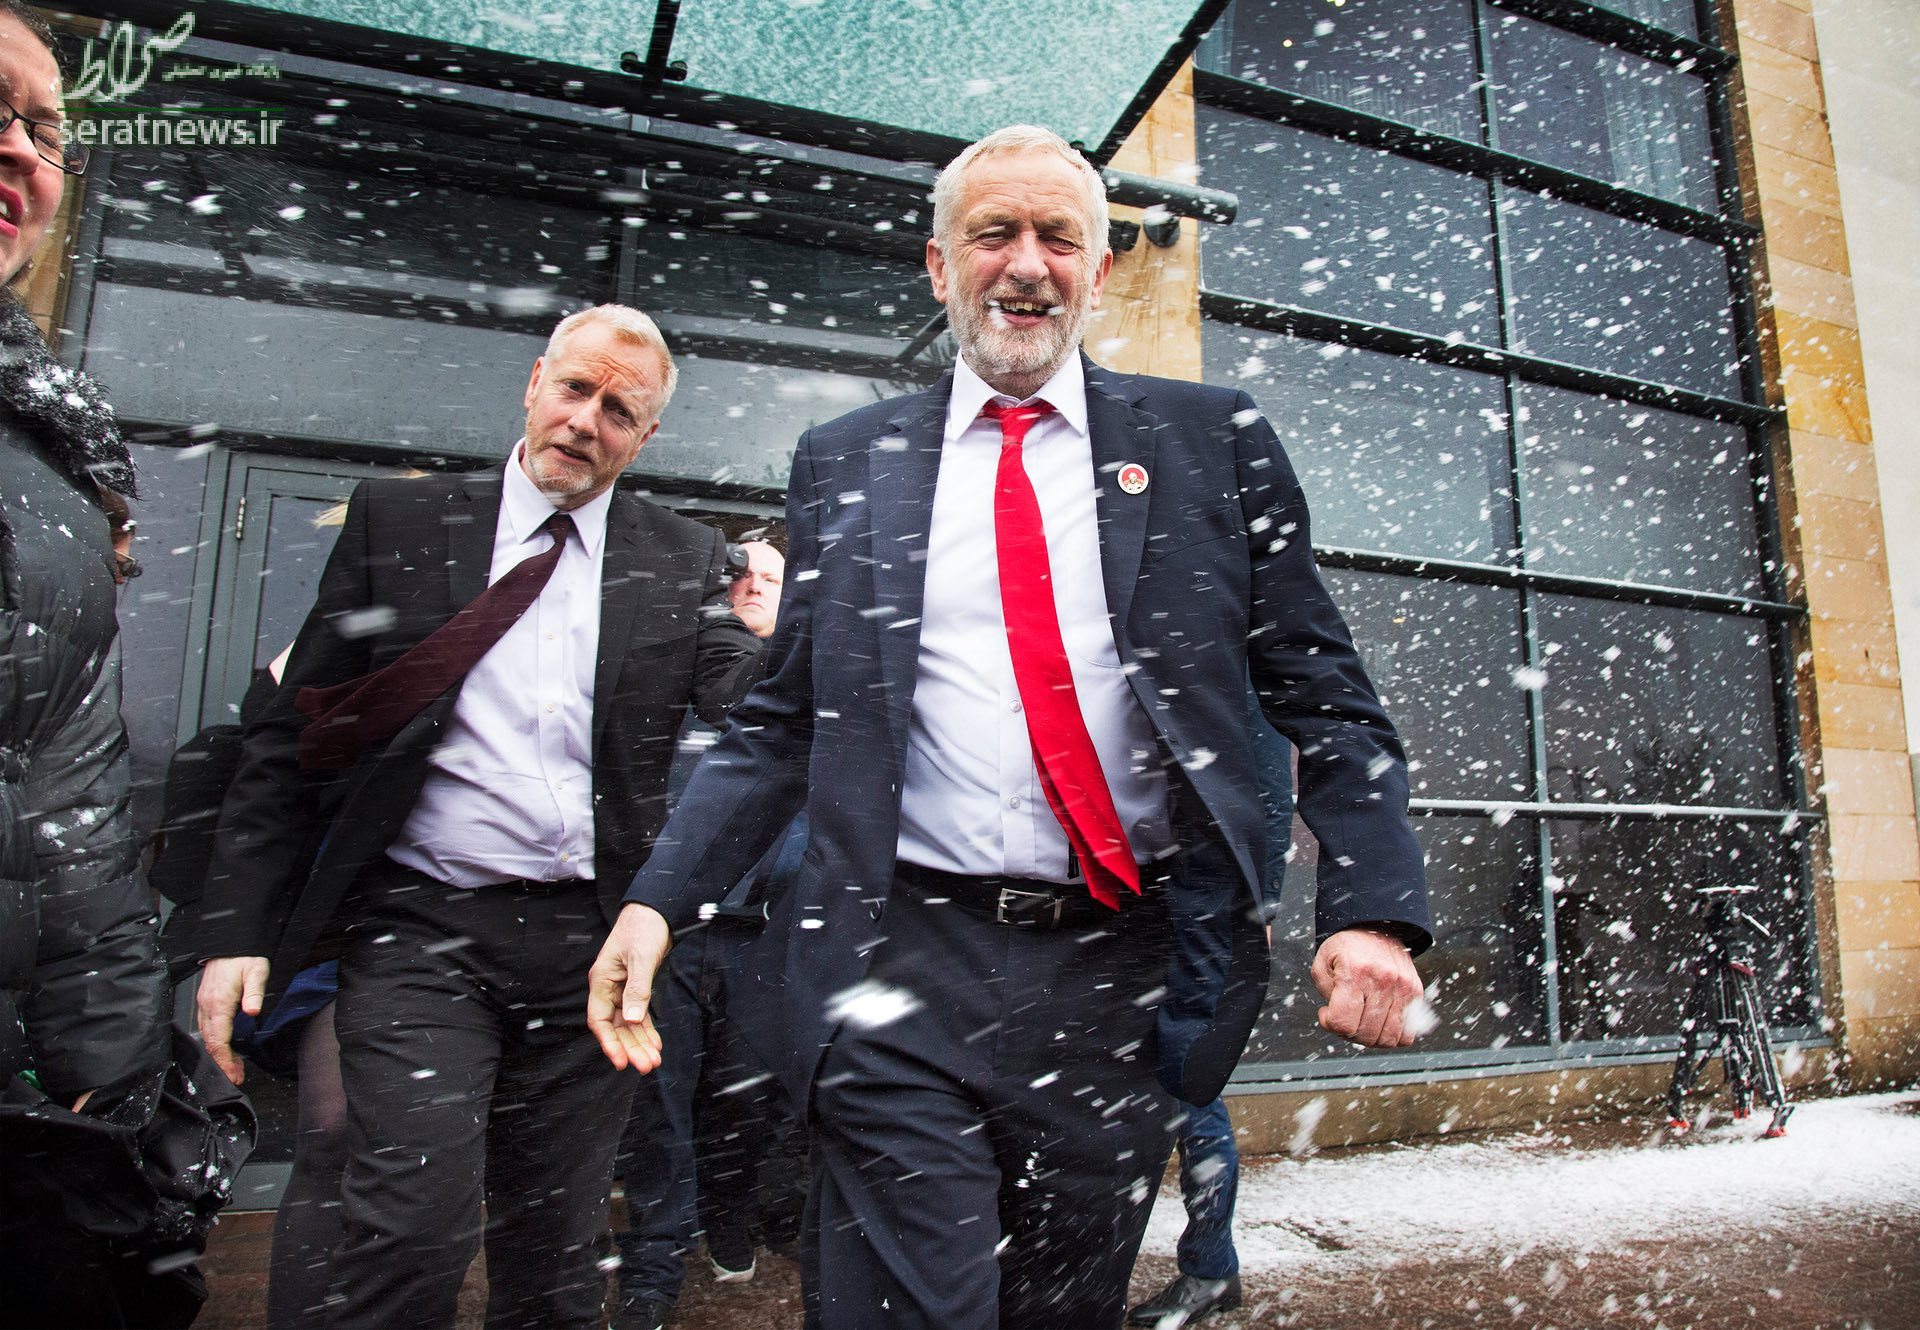 جرمی کوربین رهبر حزب کارگر انگلیس در برف